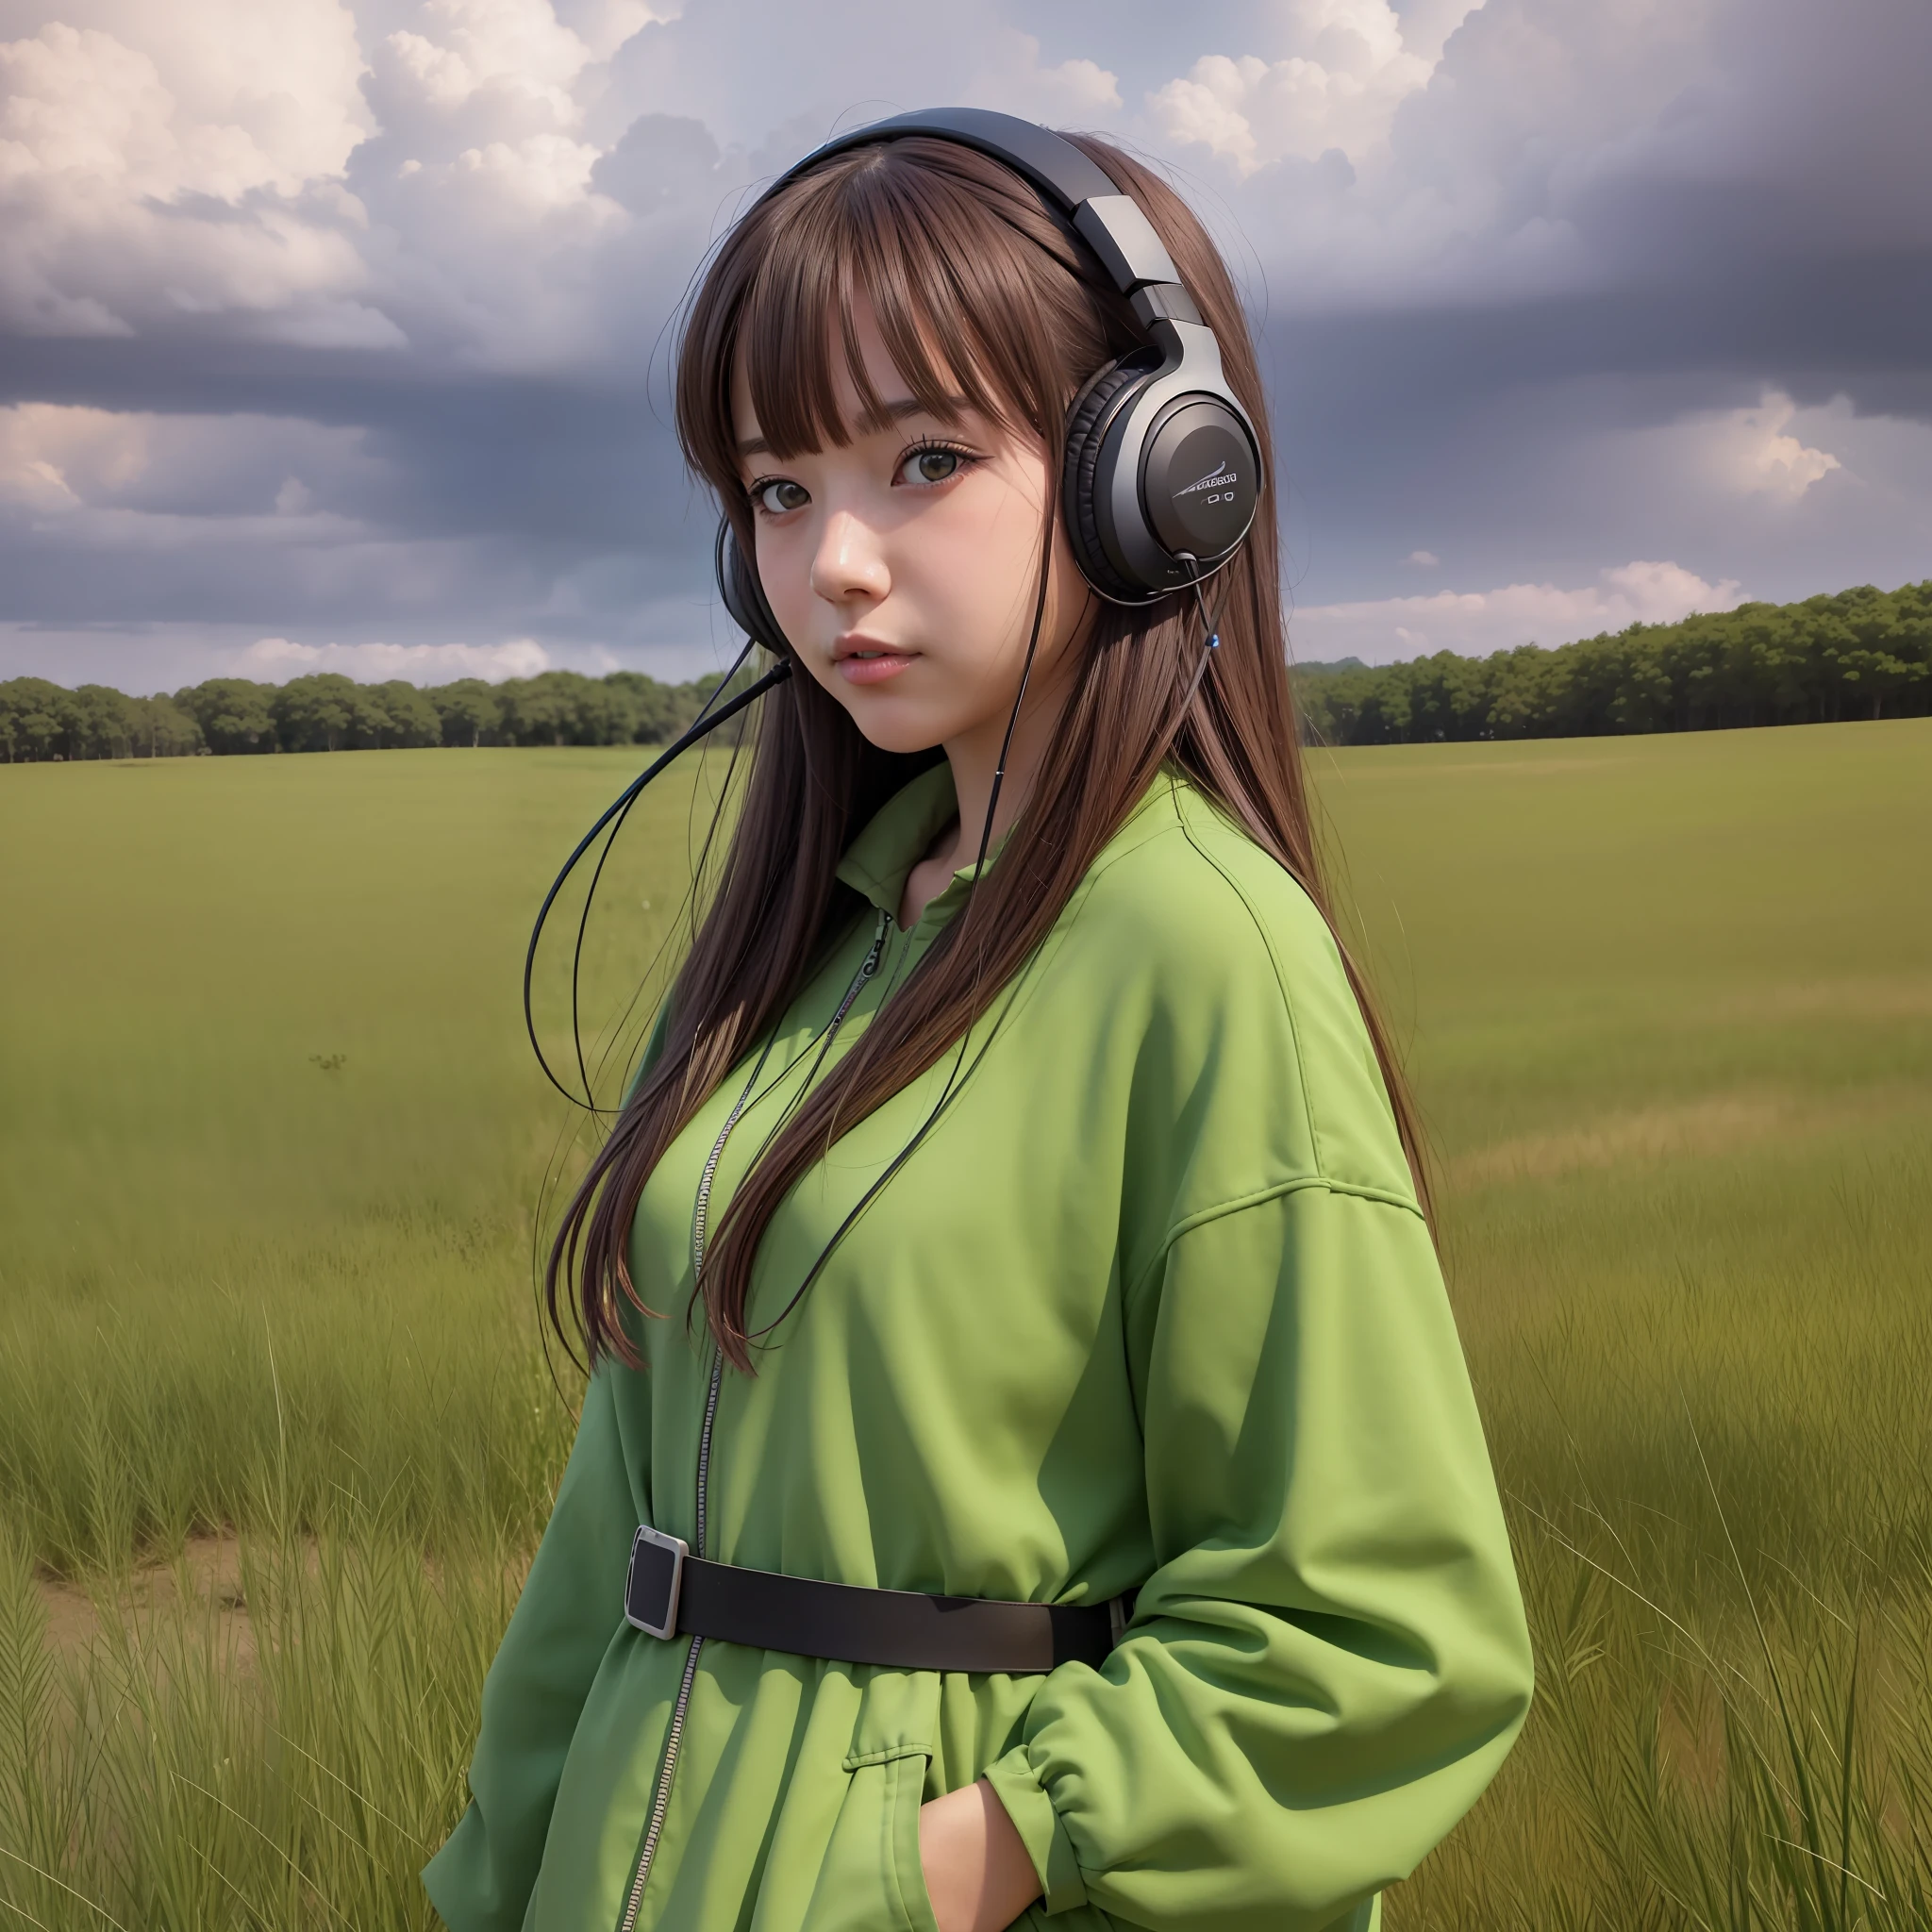 una chica anime con auriculares y parada en un campo, al estilo de los retratos realistas hiperdetallados, cabina, colores terrosos, ambicioso, dinopunk, Nubes atmosféricas, atrevido, manga-inspired characters